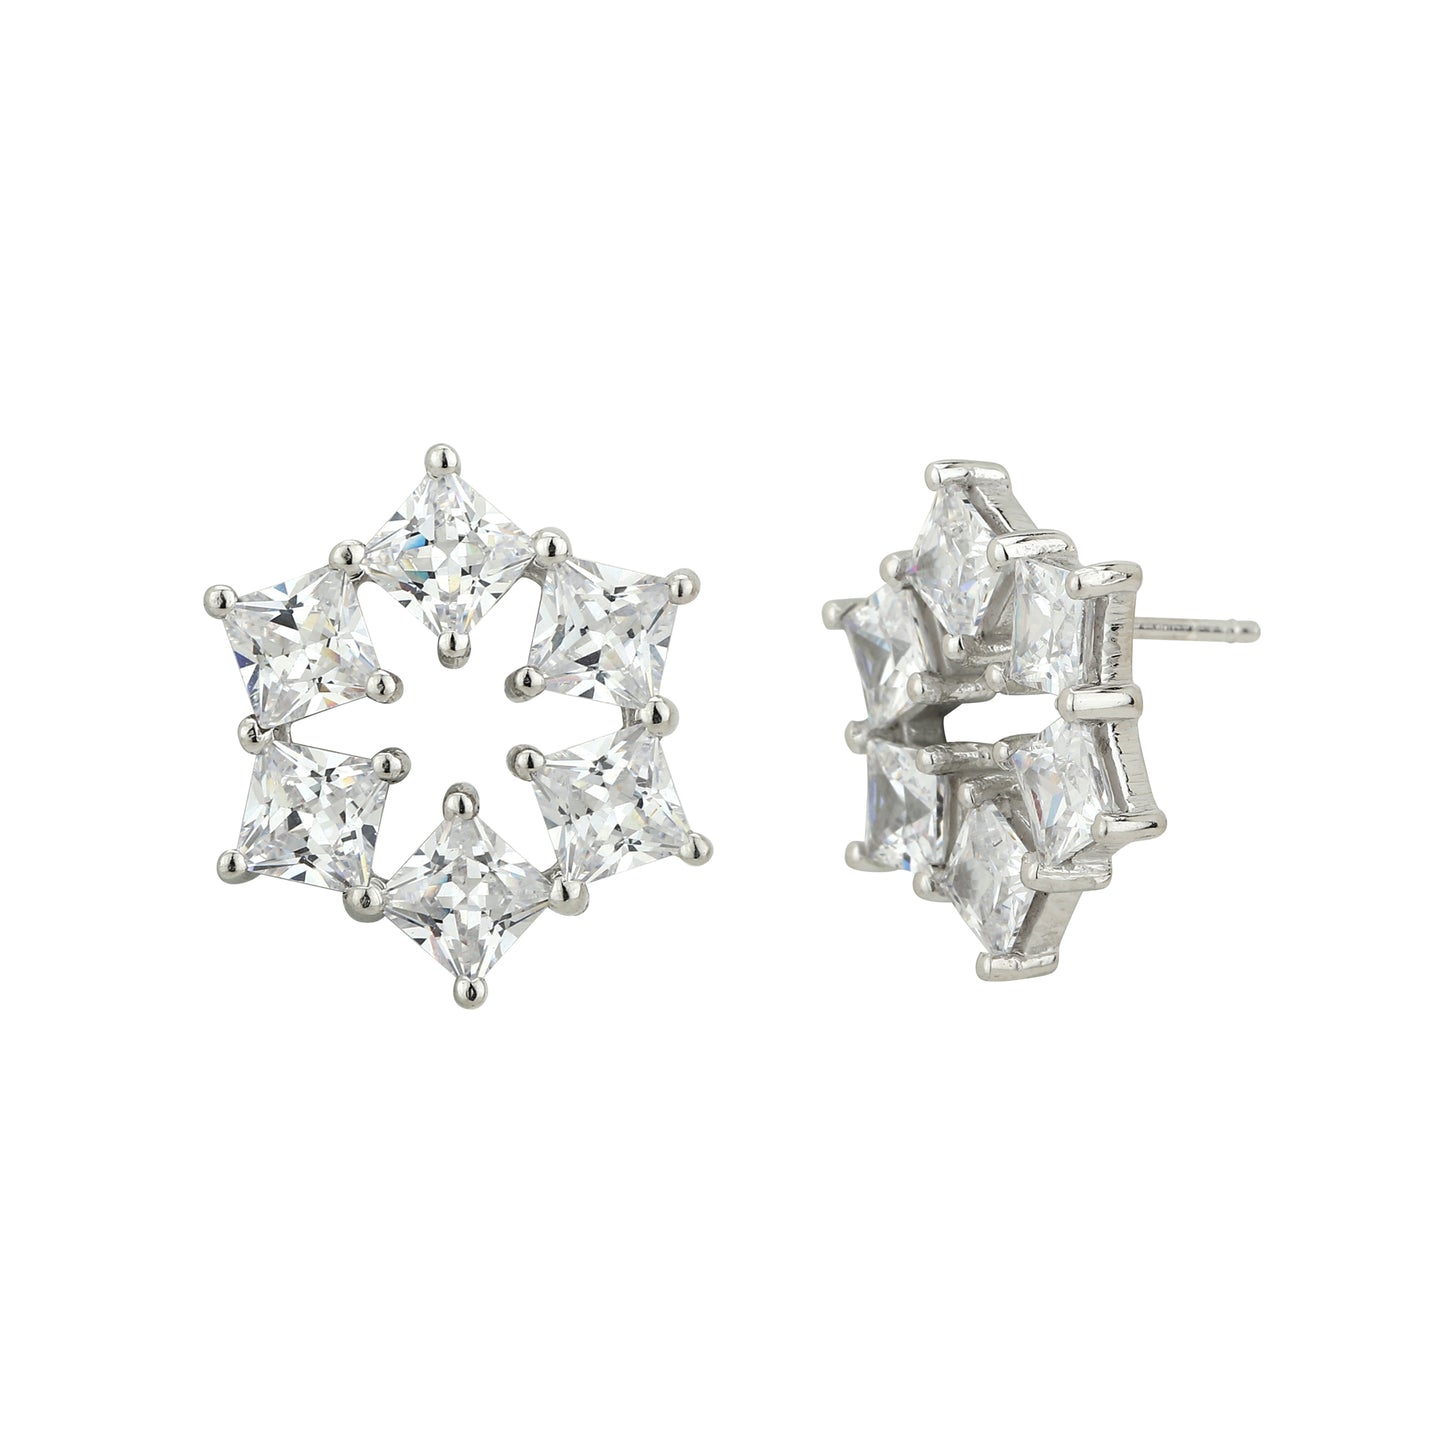 Carlton London Silver Floral Flower Shaped Diamond Effect Stud Earrings